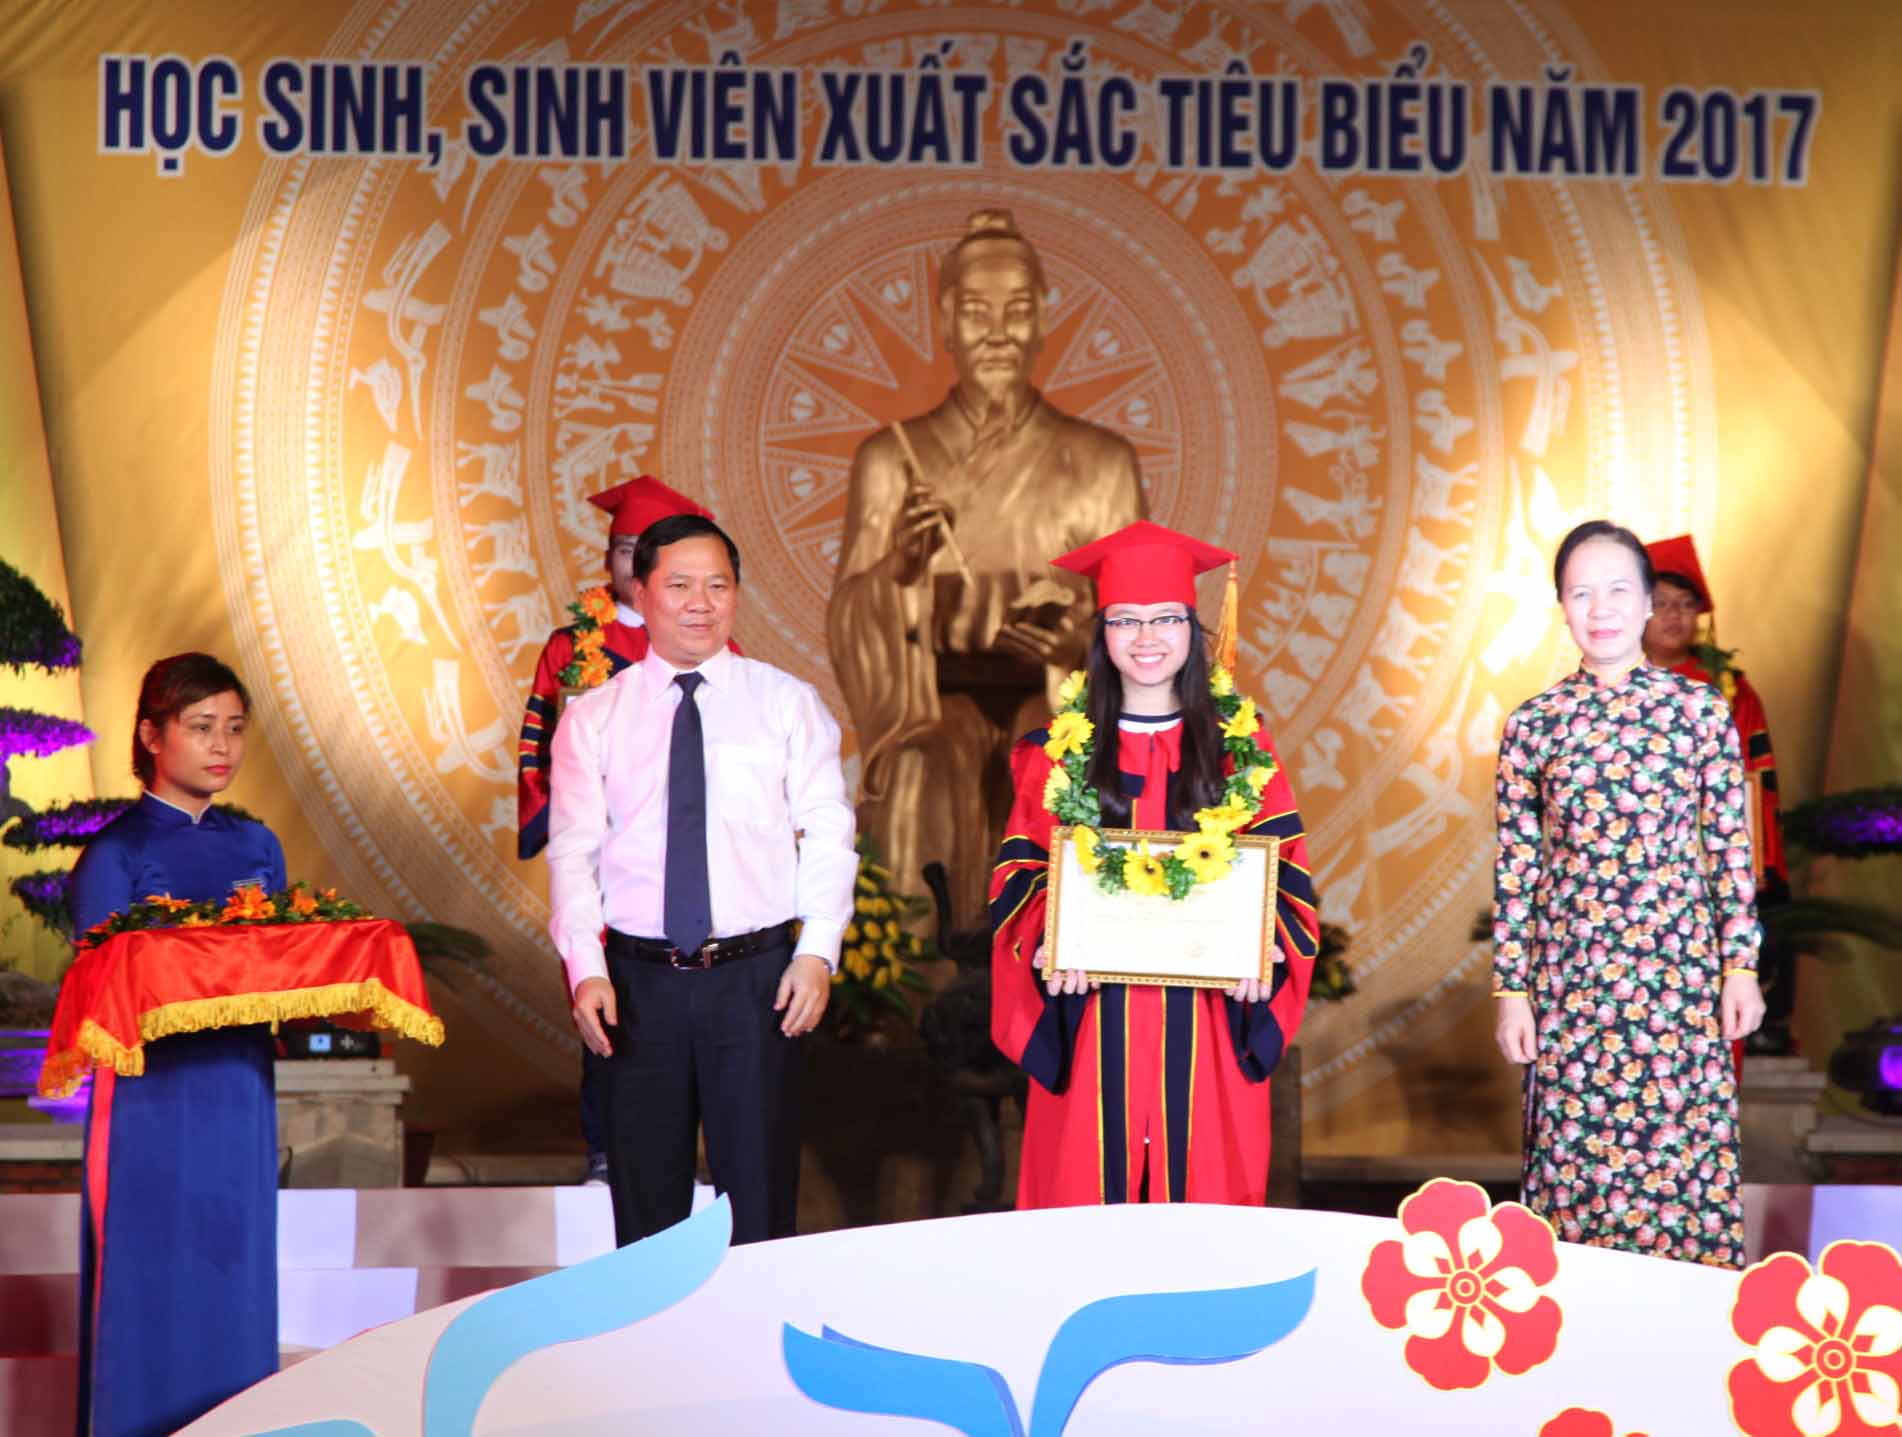 Các đồng chí Nguyễn Phi Long và Nguyễn Thị Nghĩa trao thưởng cho các HSSV tiêu biểu